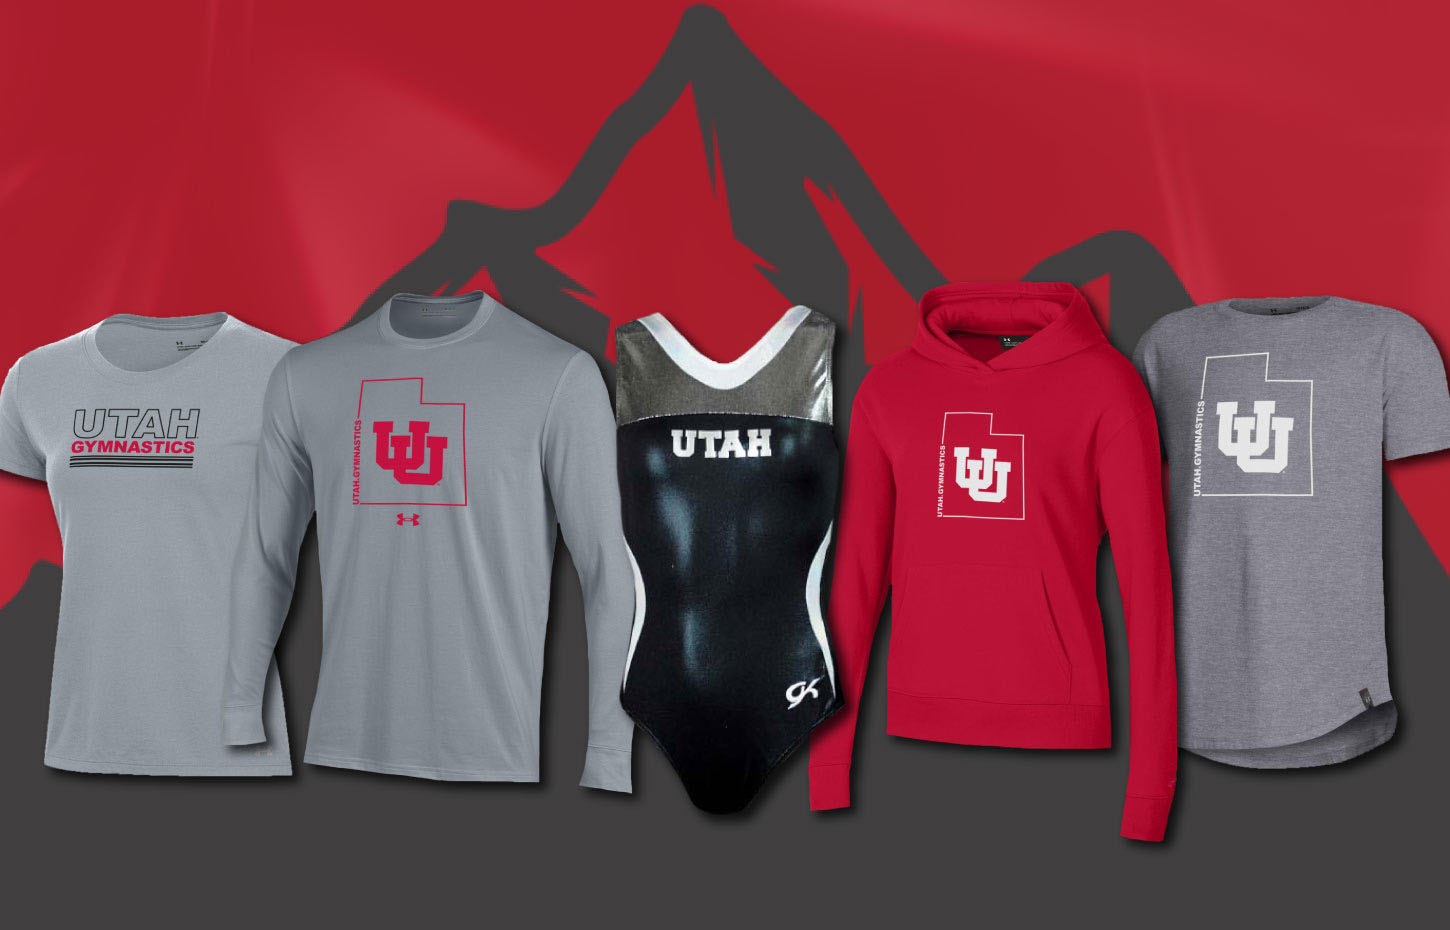 Utah University-of-Utah-Gymnastics